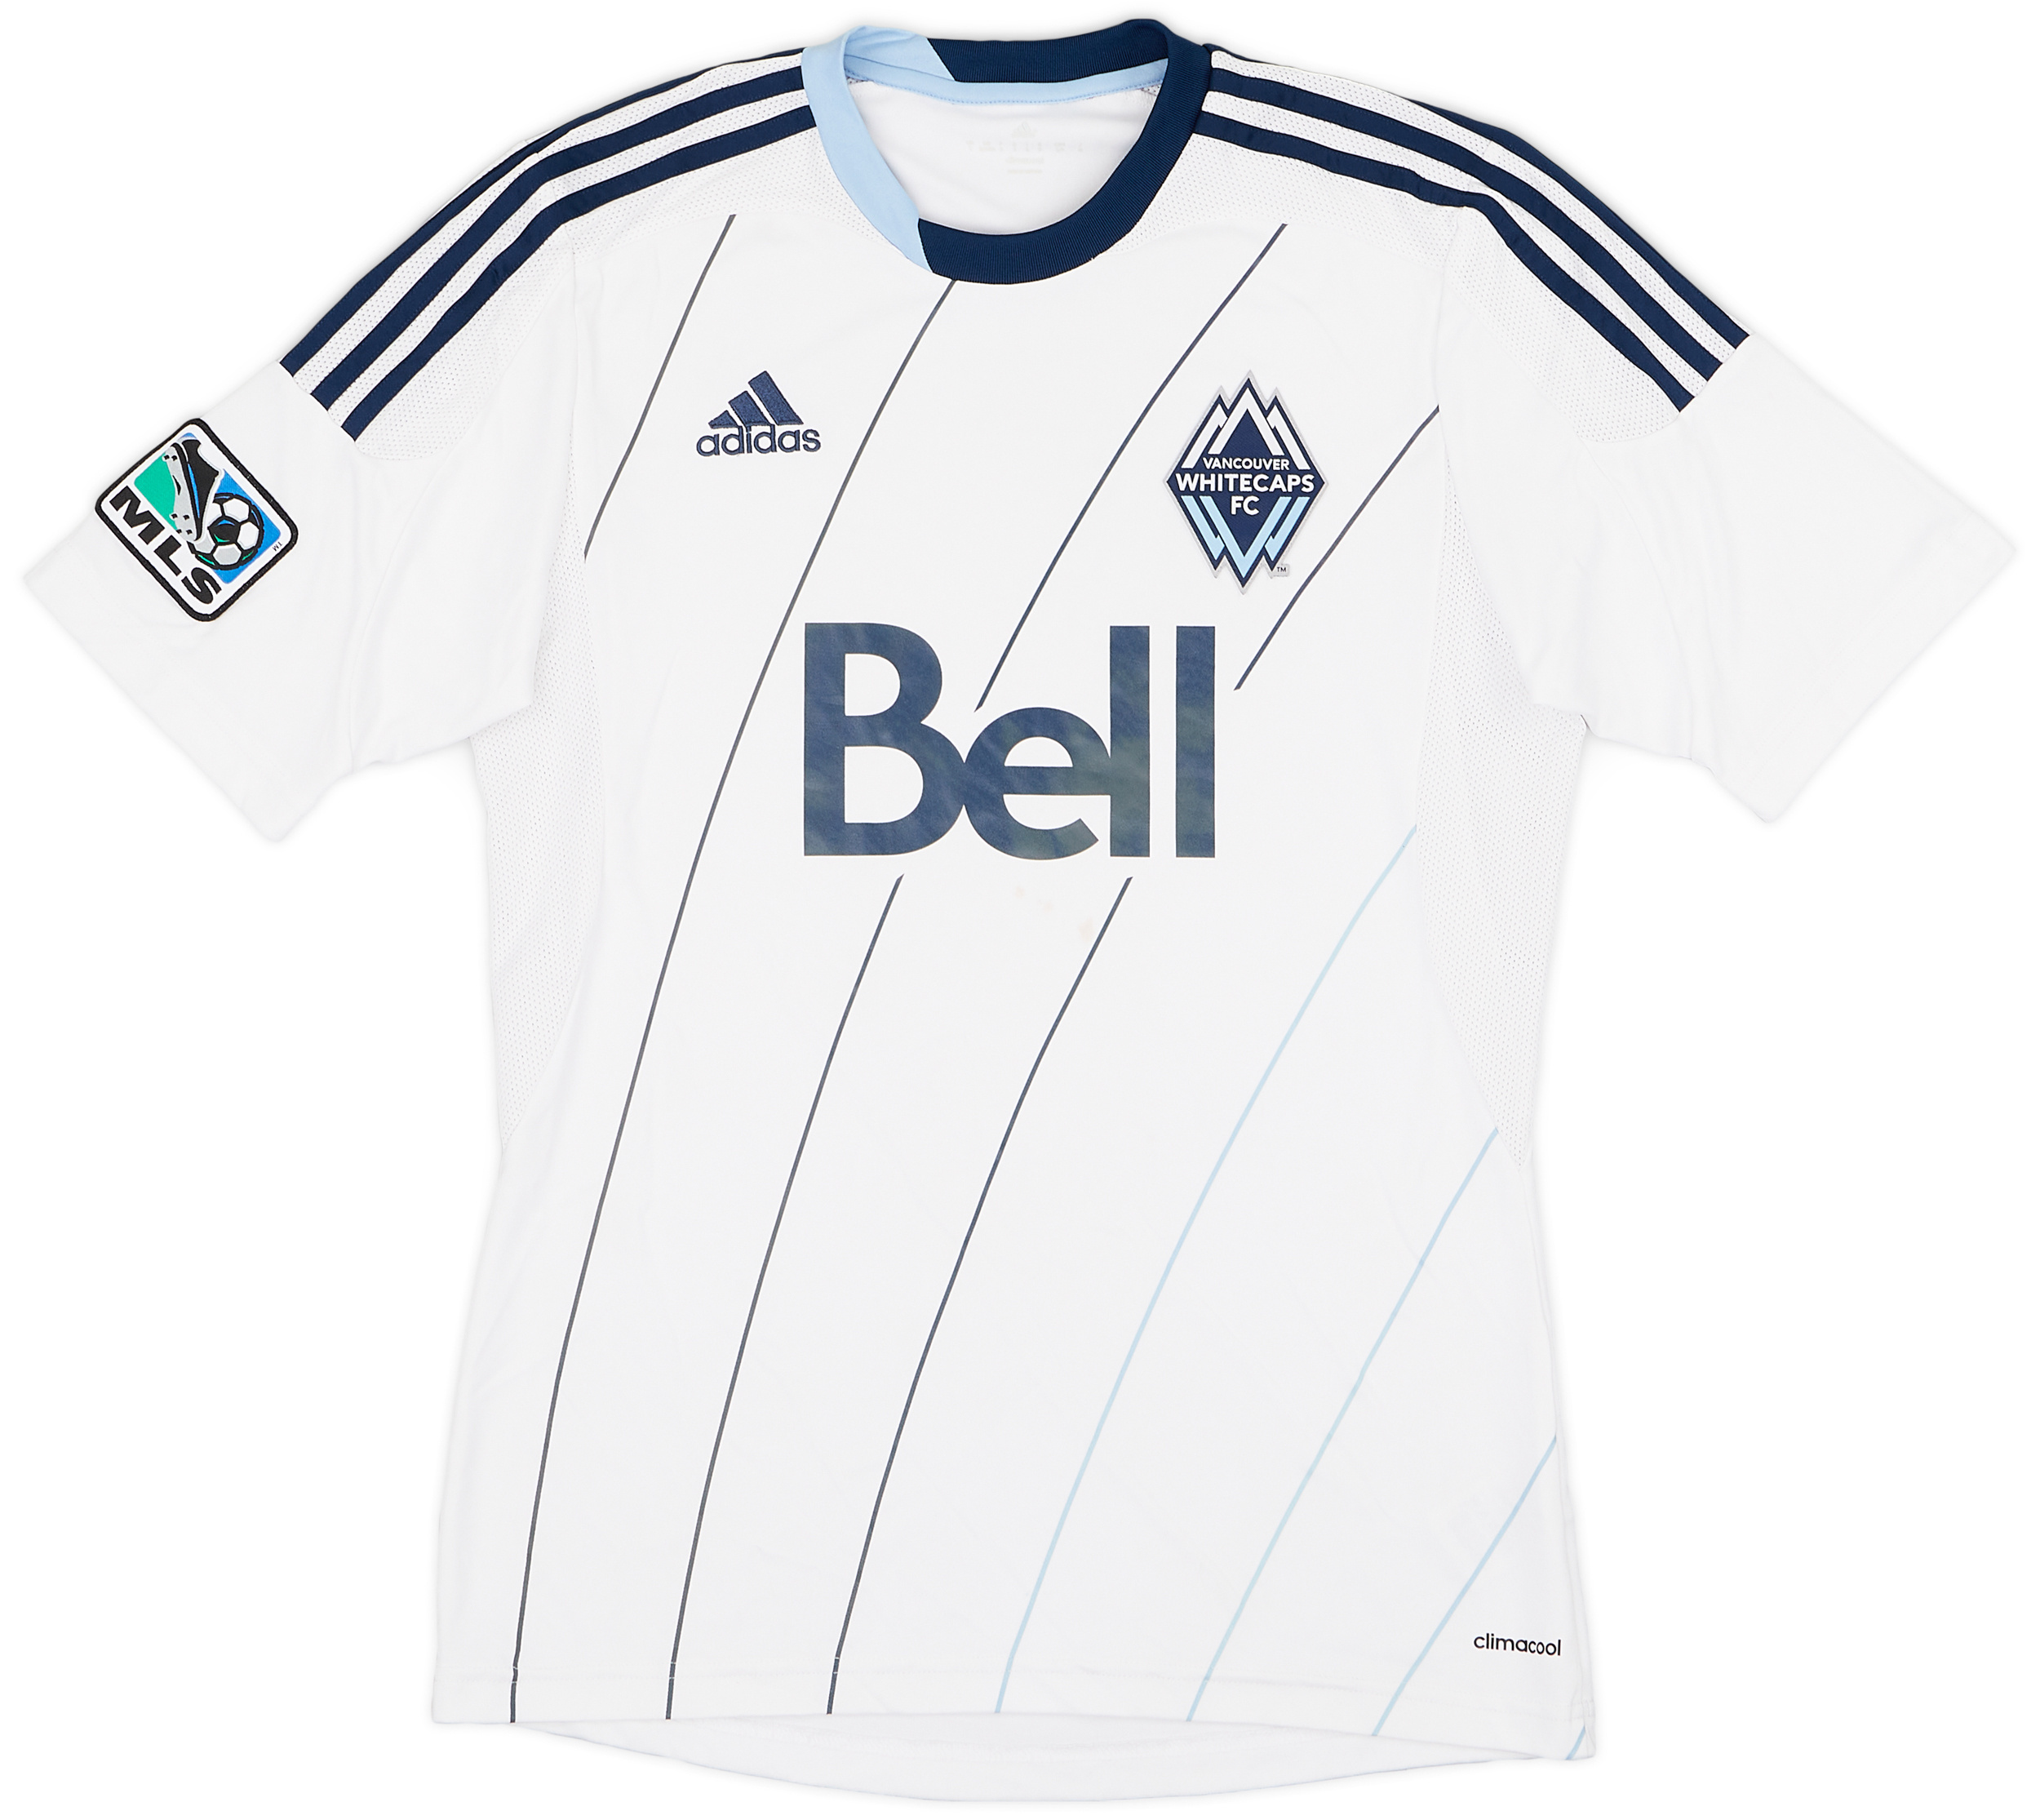 Vancouver Whitecaps  home camisa (Original)